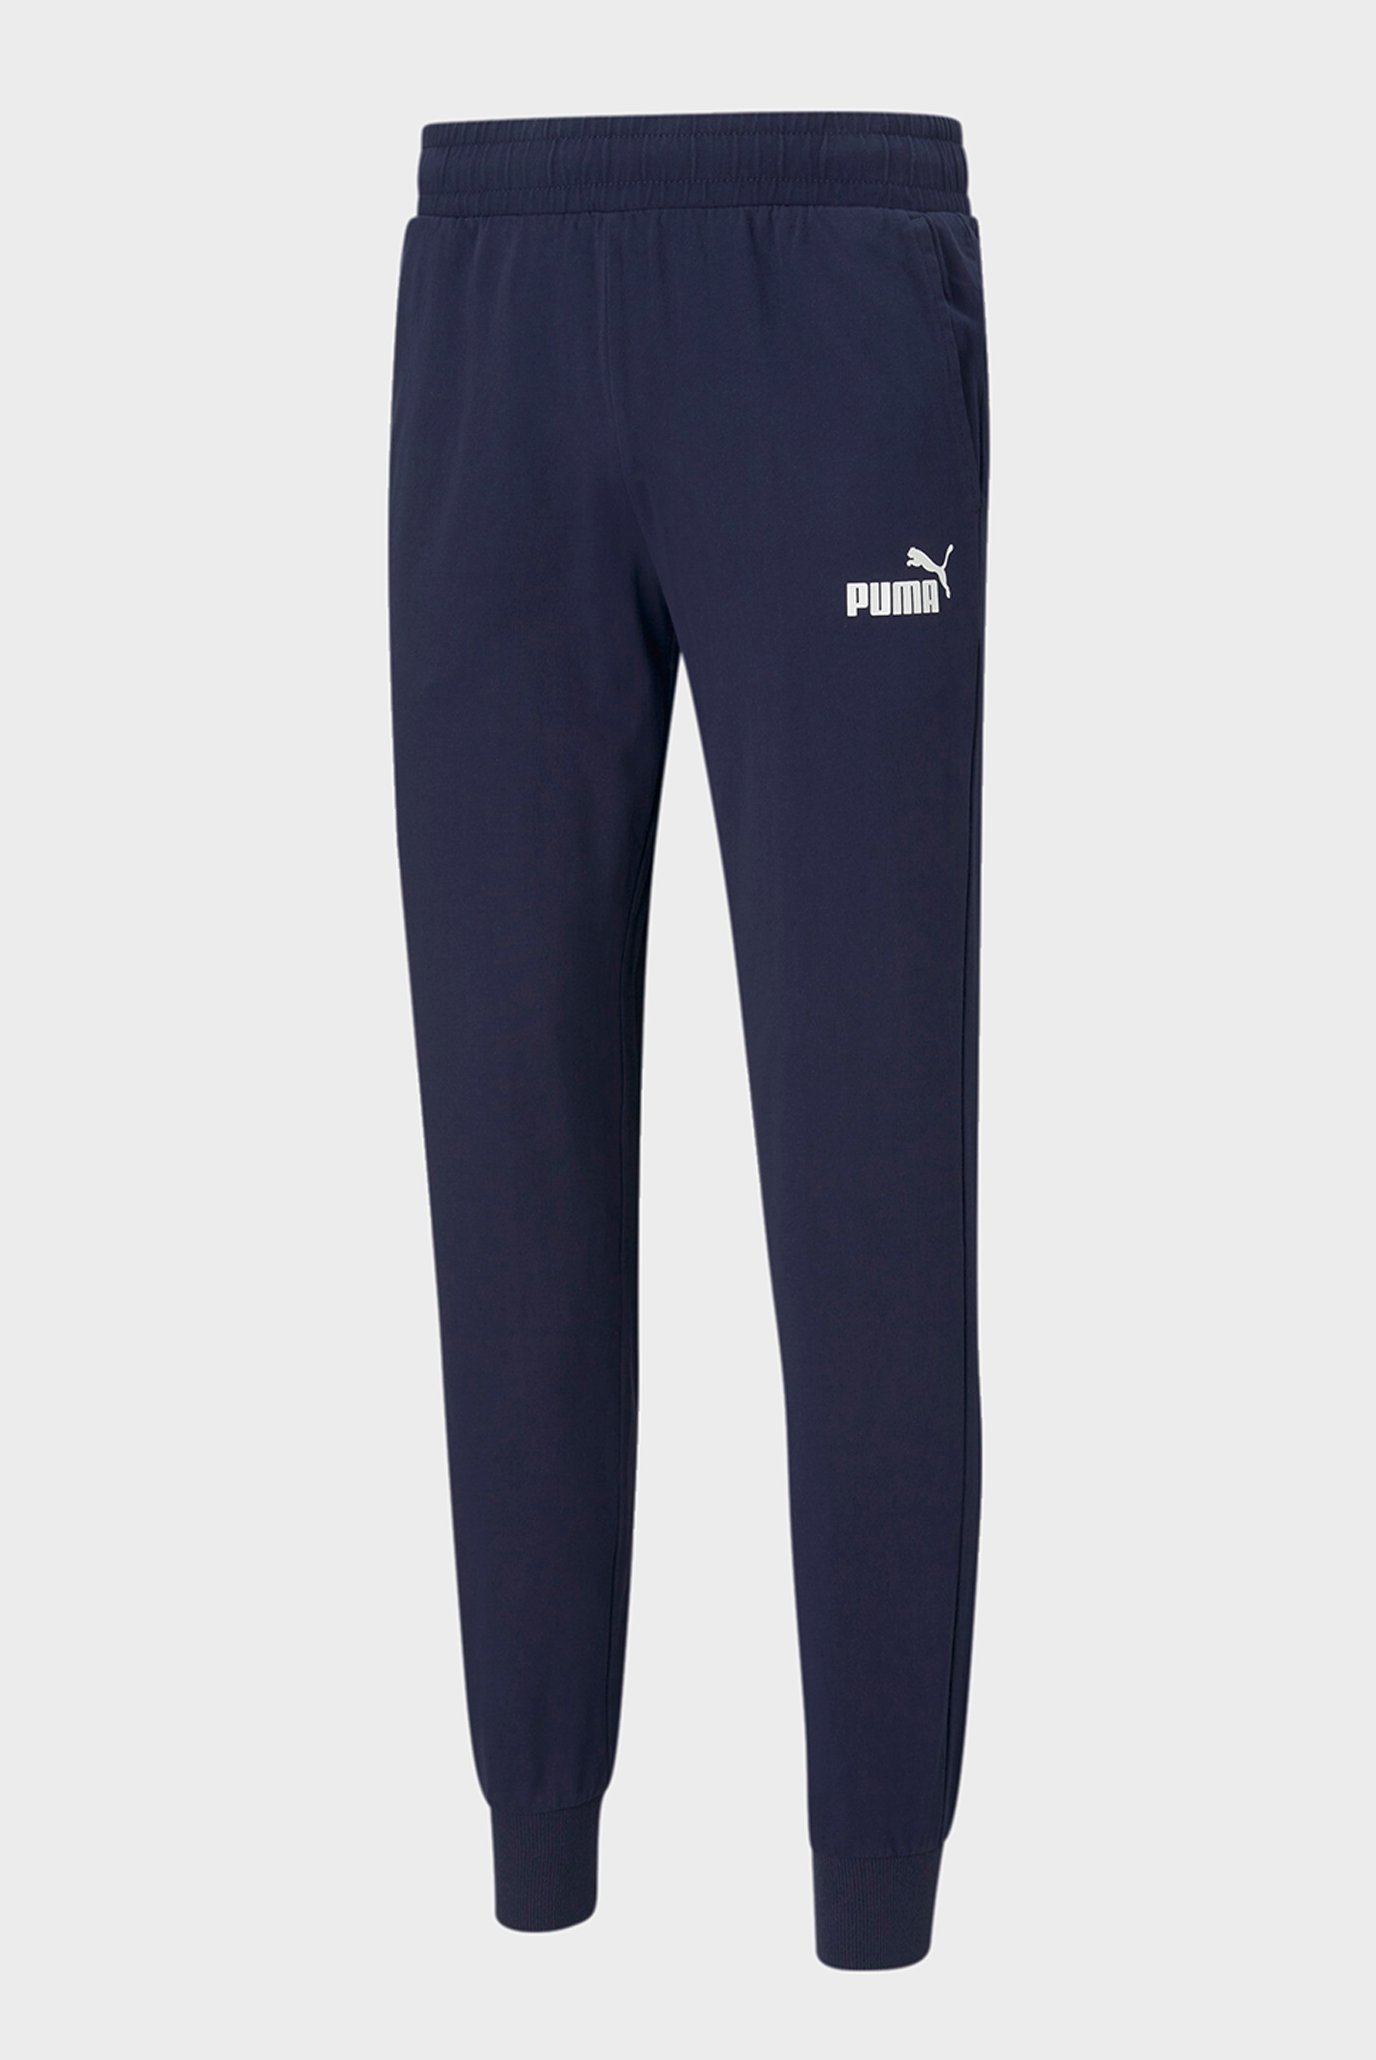 Чоловічі сині спортивні штани Essentials Jersey Men’s Sweatpants 1